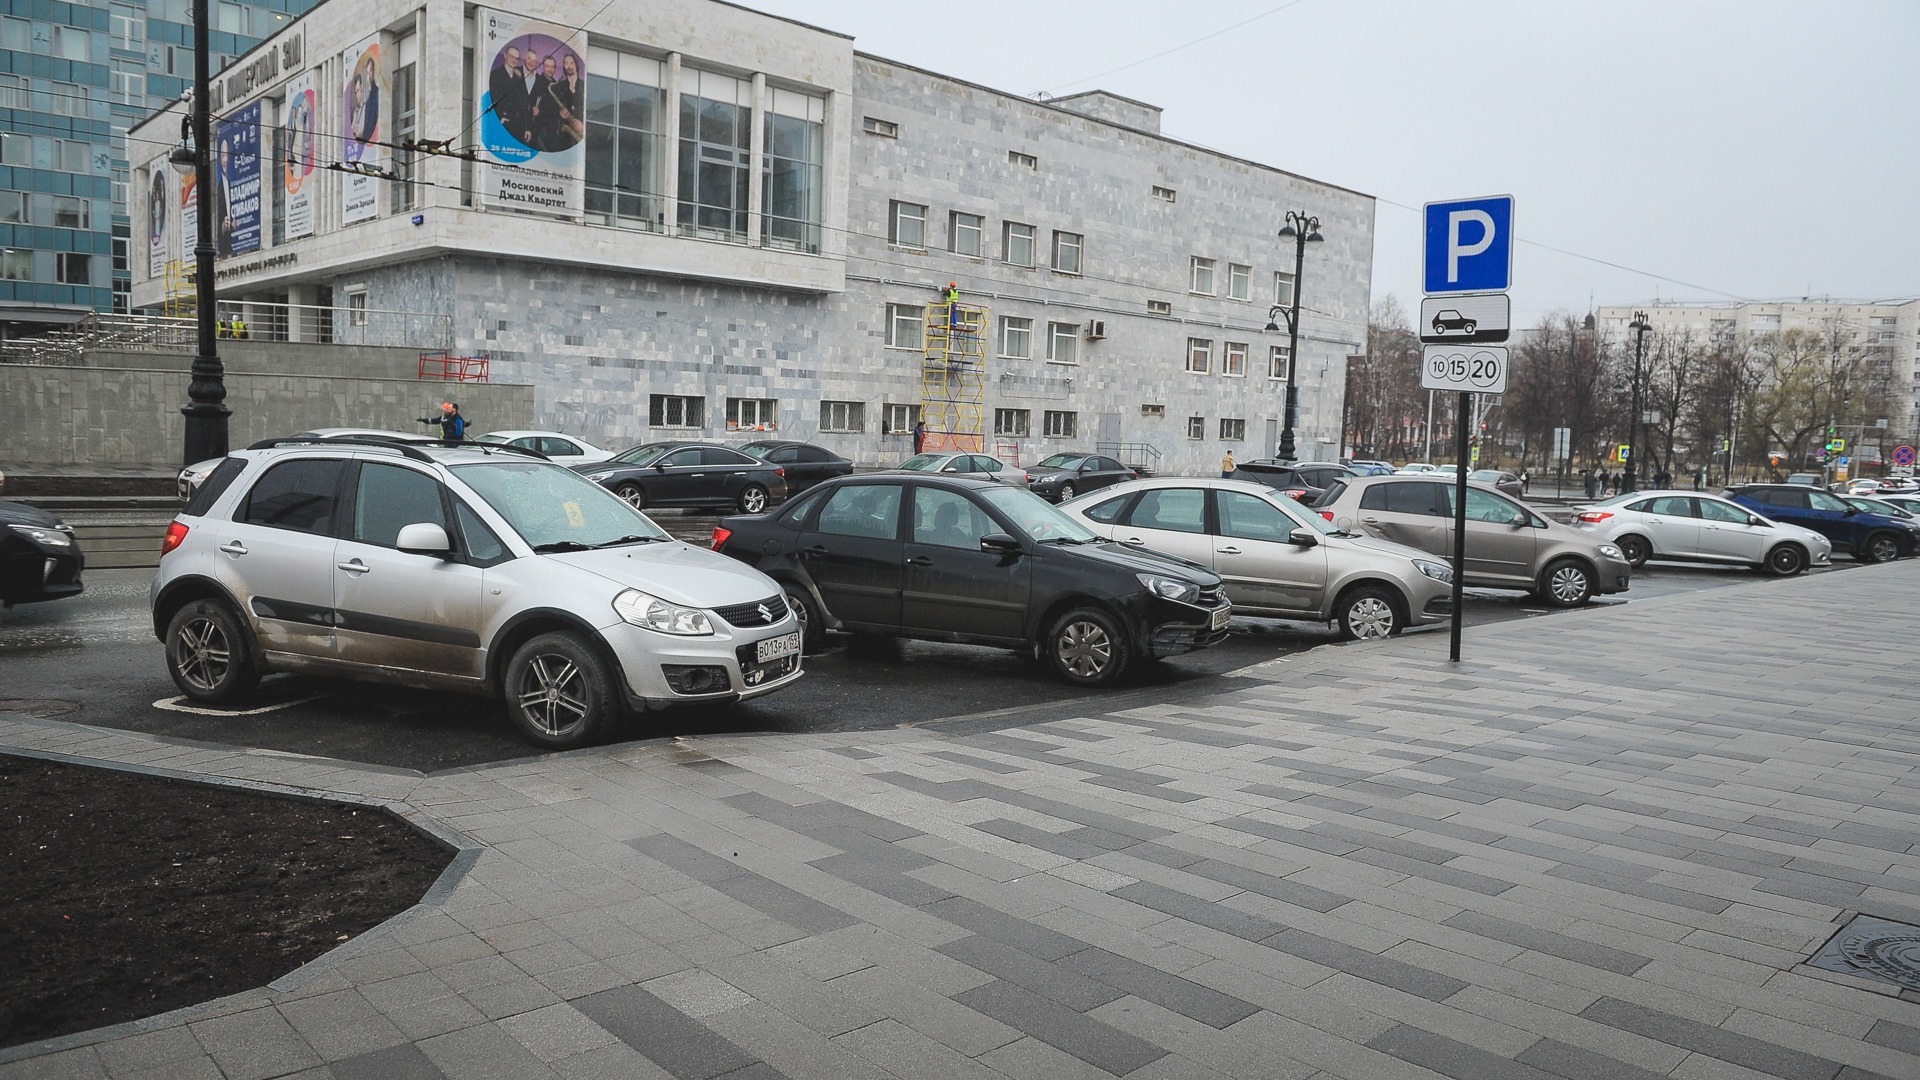 Шесть участков с платными стоянками для авто запустили в работу во Владивостоке